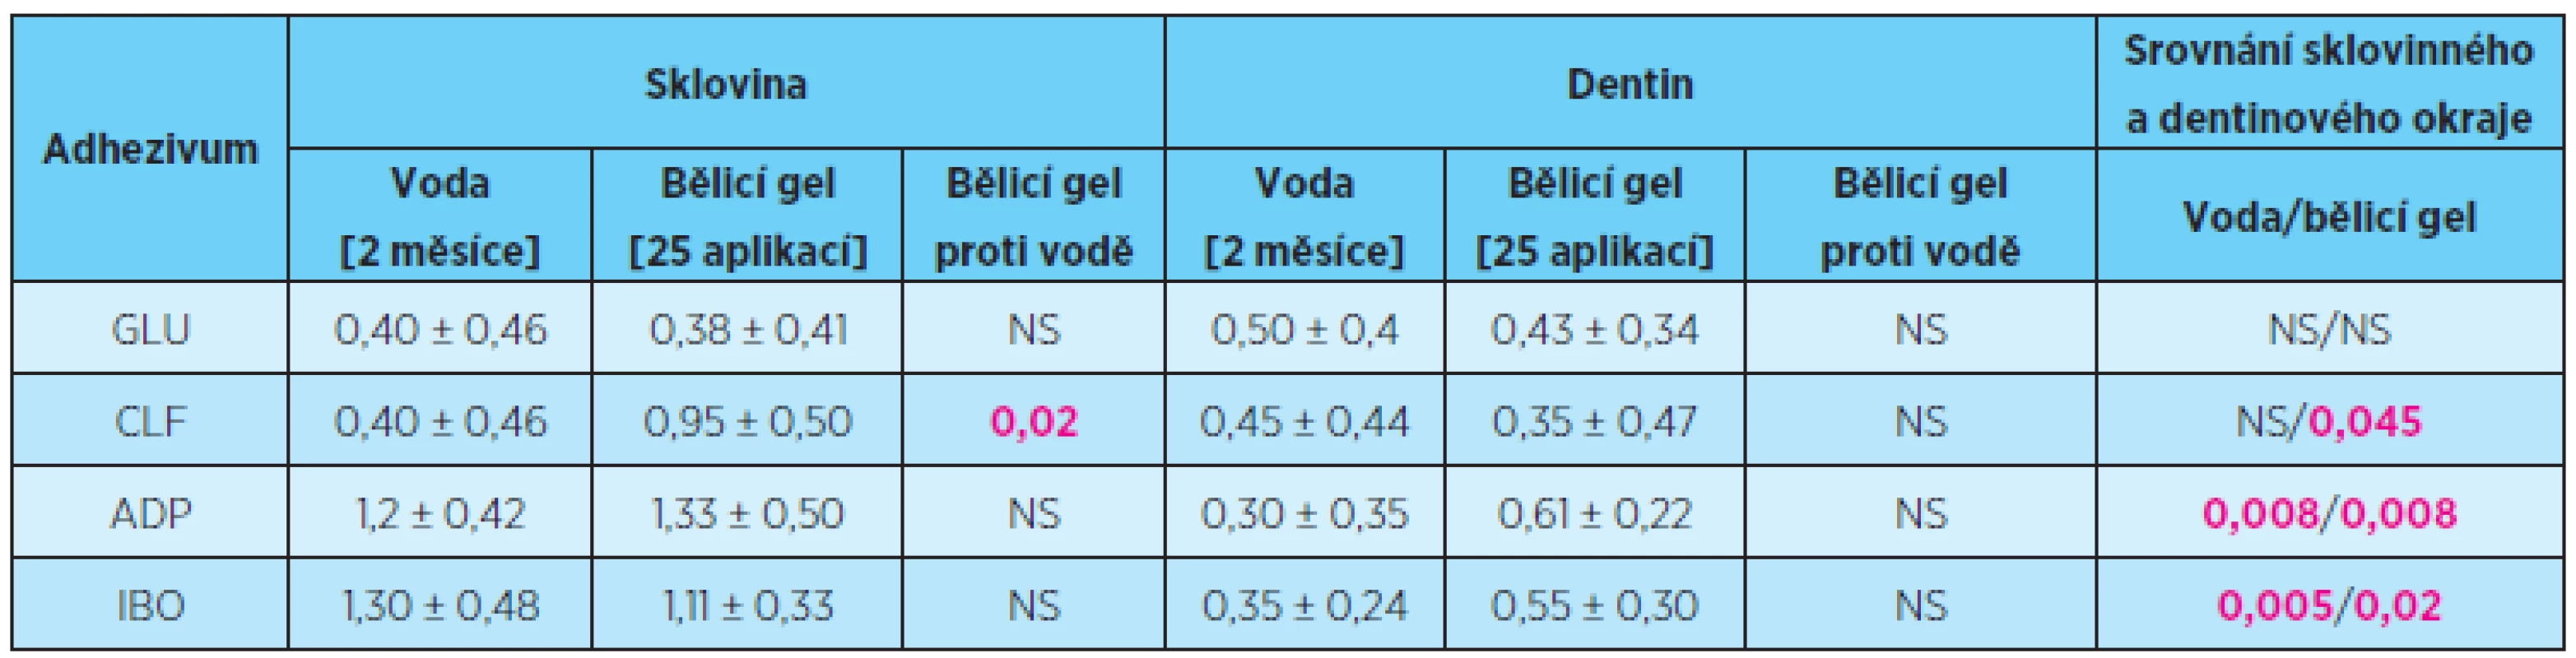 Rozsah průniku (průměr ± směrodatná odchylka) indikačního barviva sklovinným a dentinovým okrajem výplní po 25 aplikacích peroxidového bělicího gelu v porovnání s destilovanou vodou po 2 měsících expozice, statistické hodnocení Mannovým-Whitneyho testem, porovnání propustnosti sklovinného a dentinového okraje Wilcoxonovým párovým testem, p = 0,05